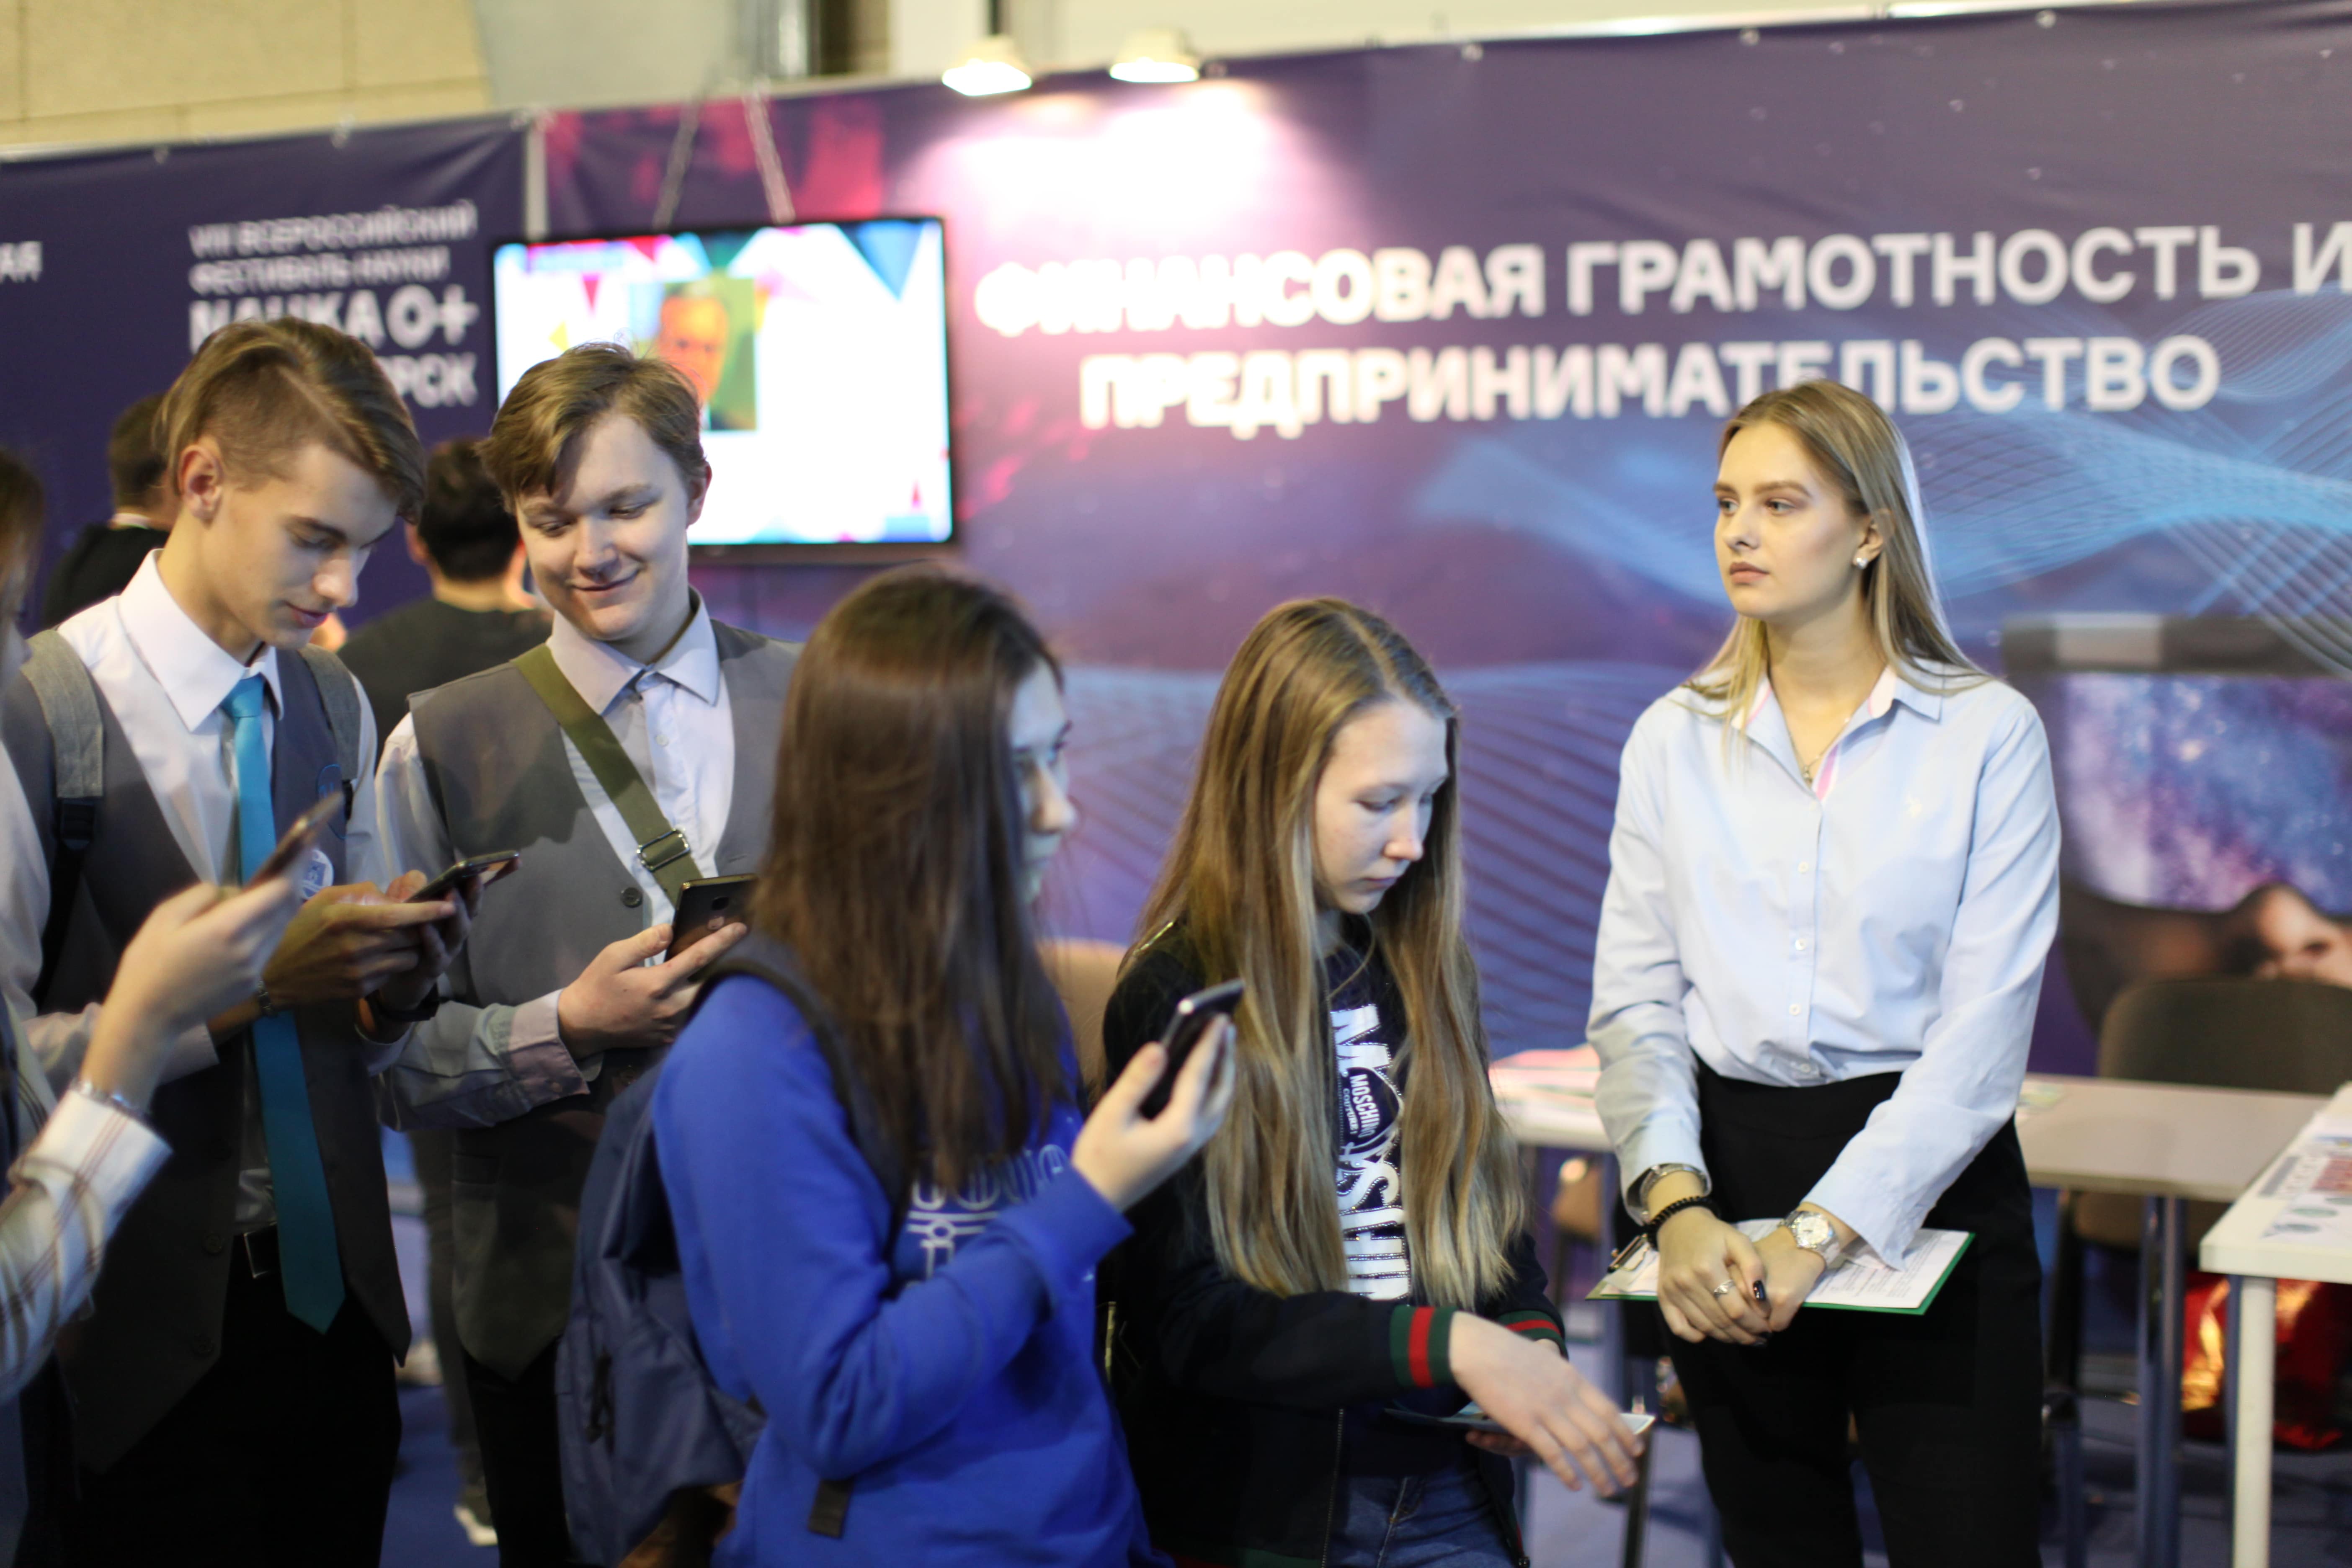 Студенты СФУ провели интерактивную площадку по финансовой грамотности в цифровой экономике на фестивале "Наука 0+" в Красноярске